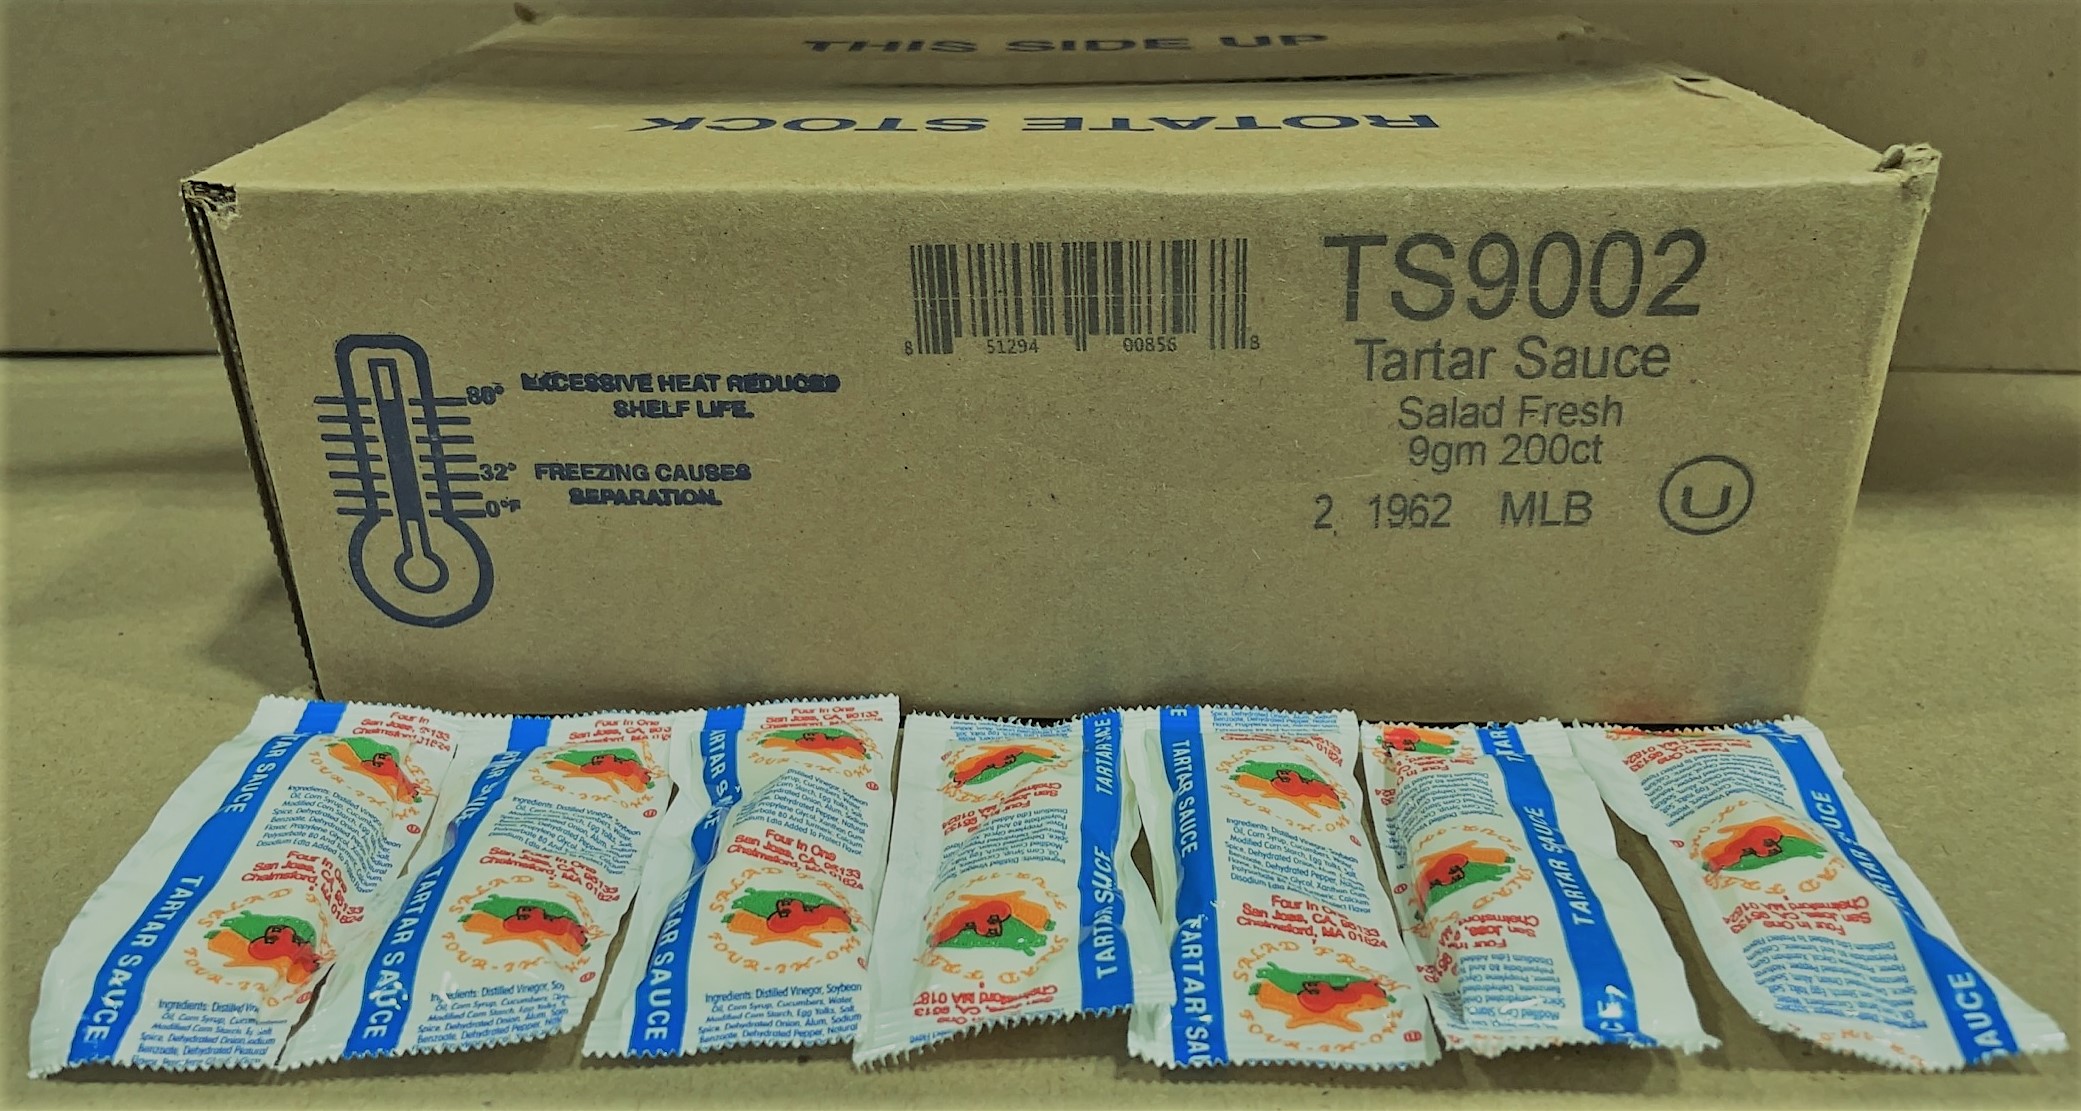 S&P - Tartar Sauce Salad Fresh 9gm 200ct